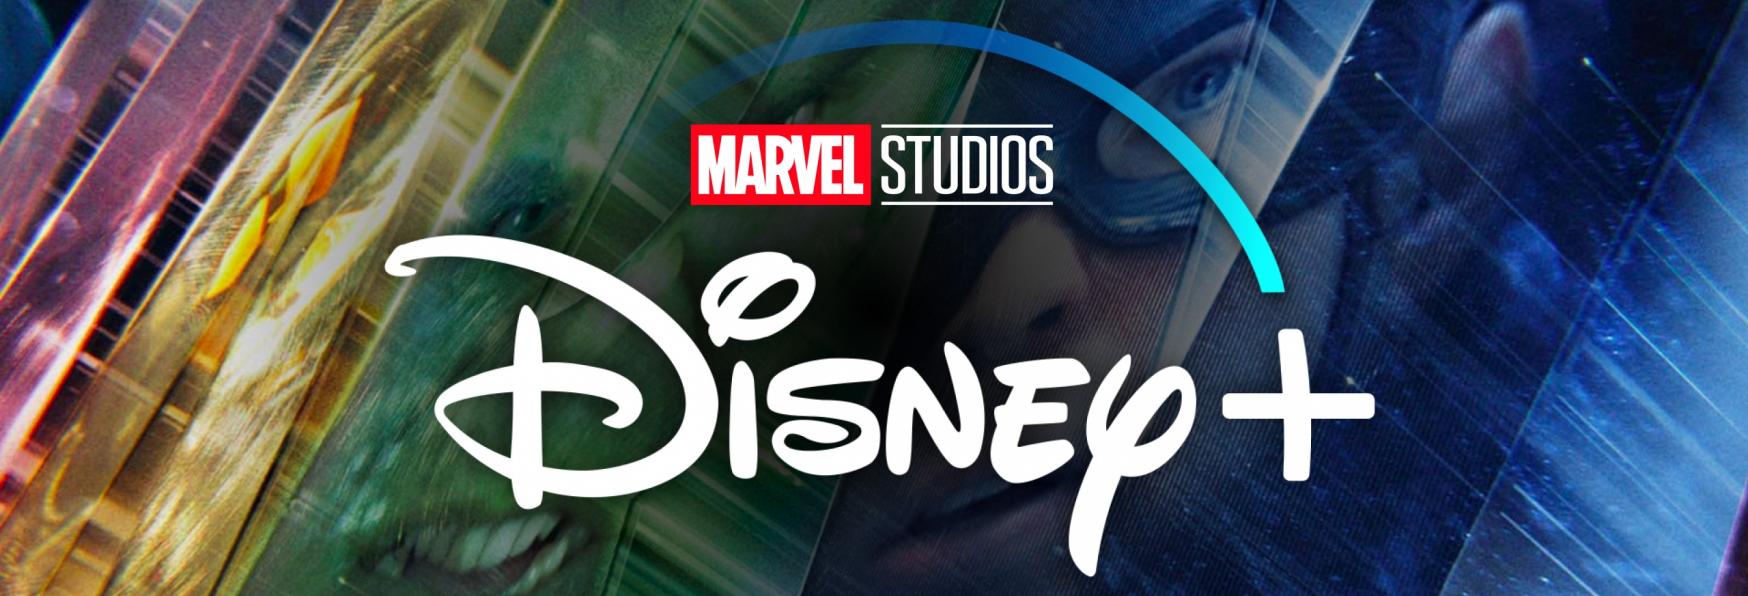 Marvel Studios e Disney+ al lavoro su una nuova Serie TV ambientata nello Spazio?